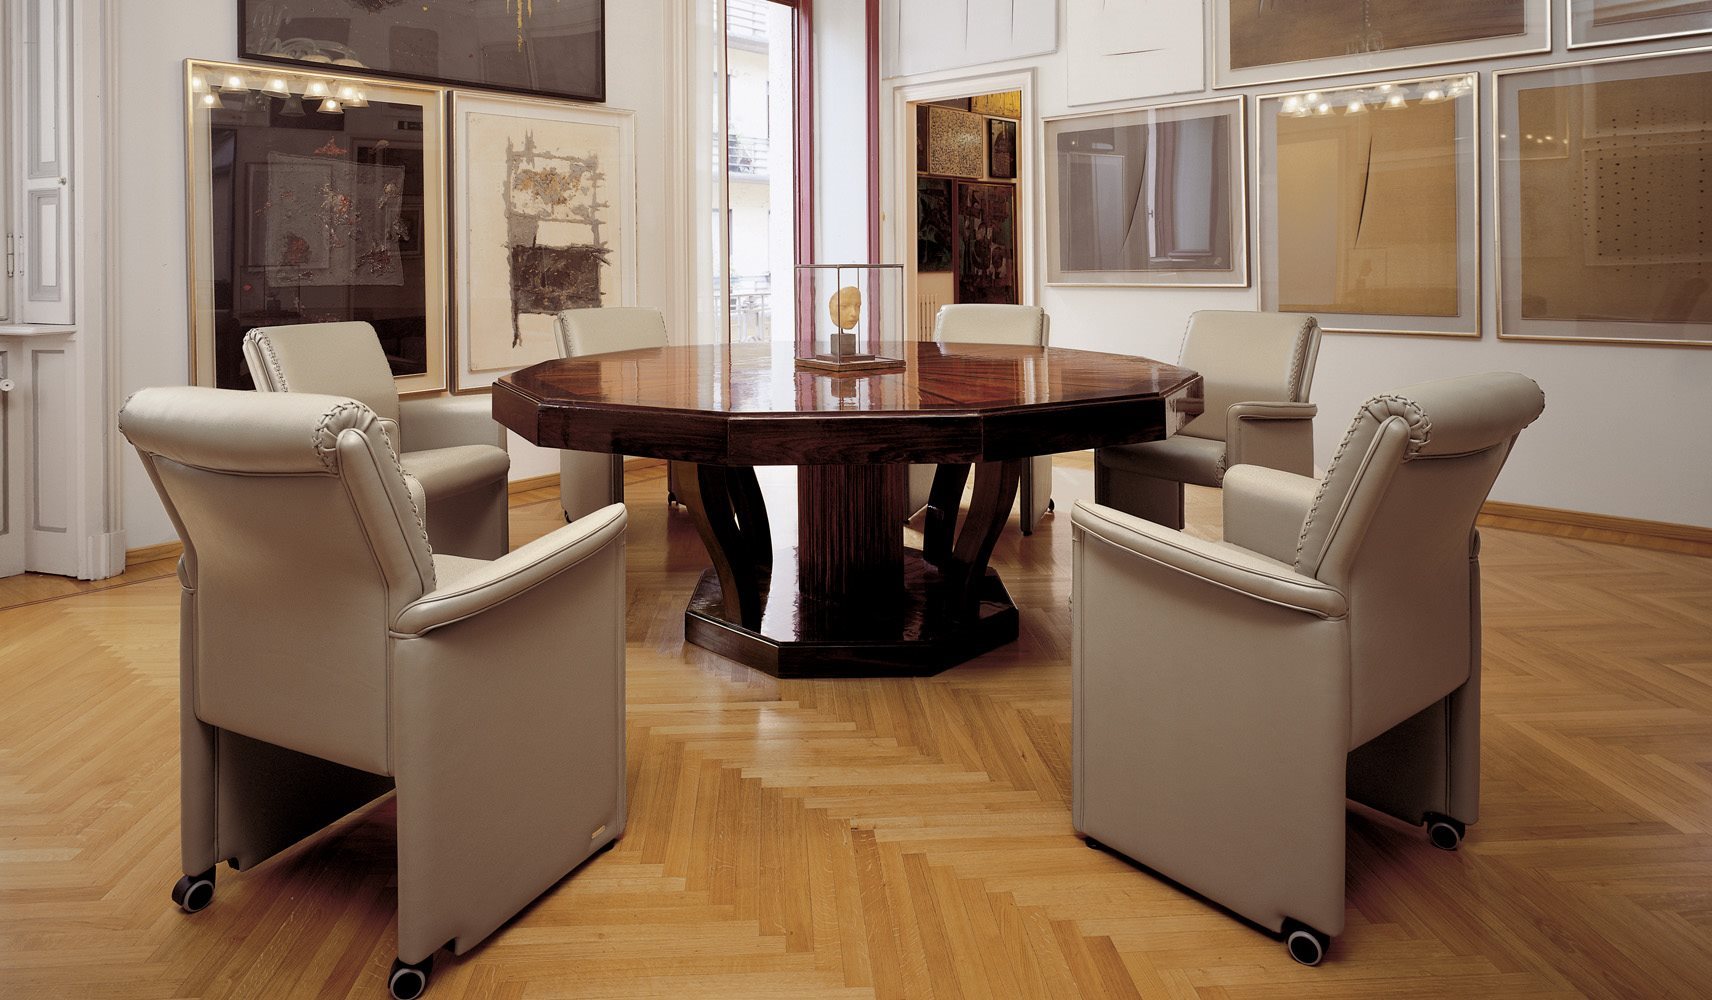 Кресло офисное G7 V, дизайн Mascheroni